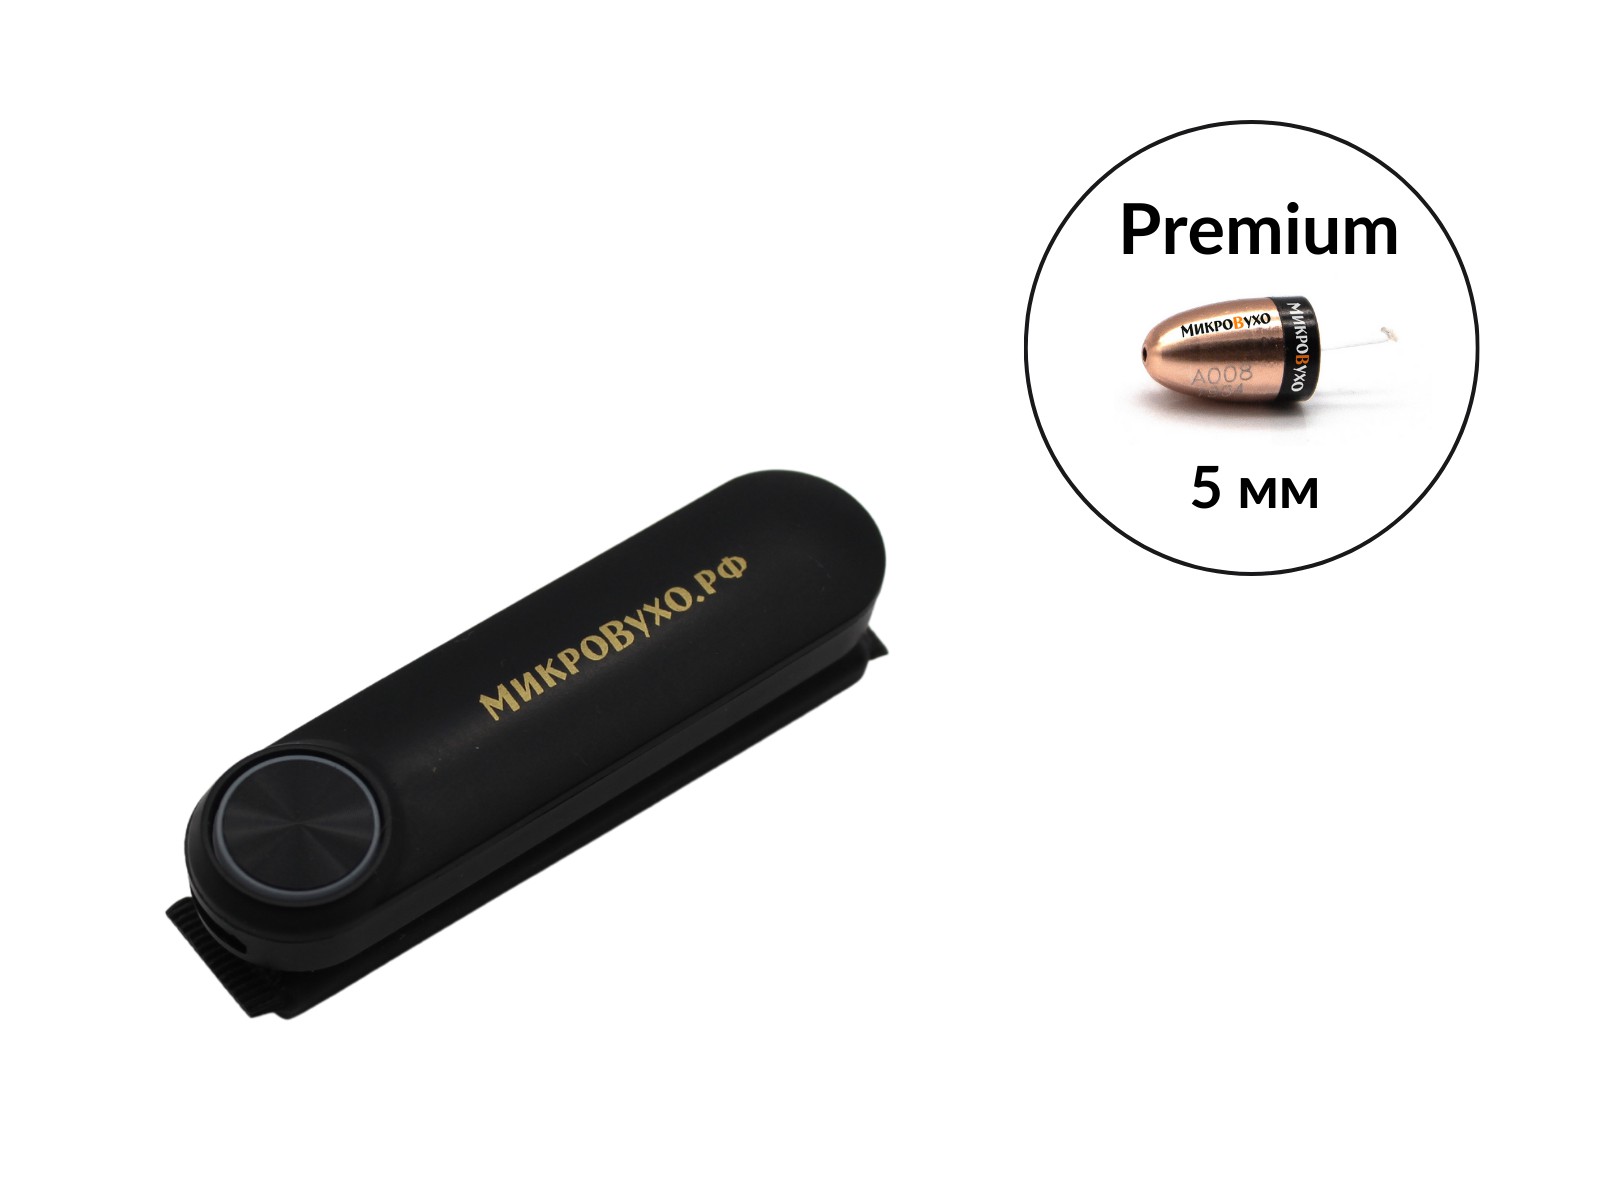 Гарнитура Bluetooth Box Standard Plus с капсульным микронаушником Premium - изображение 4